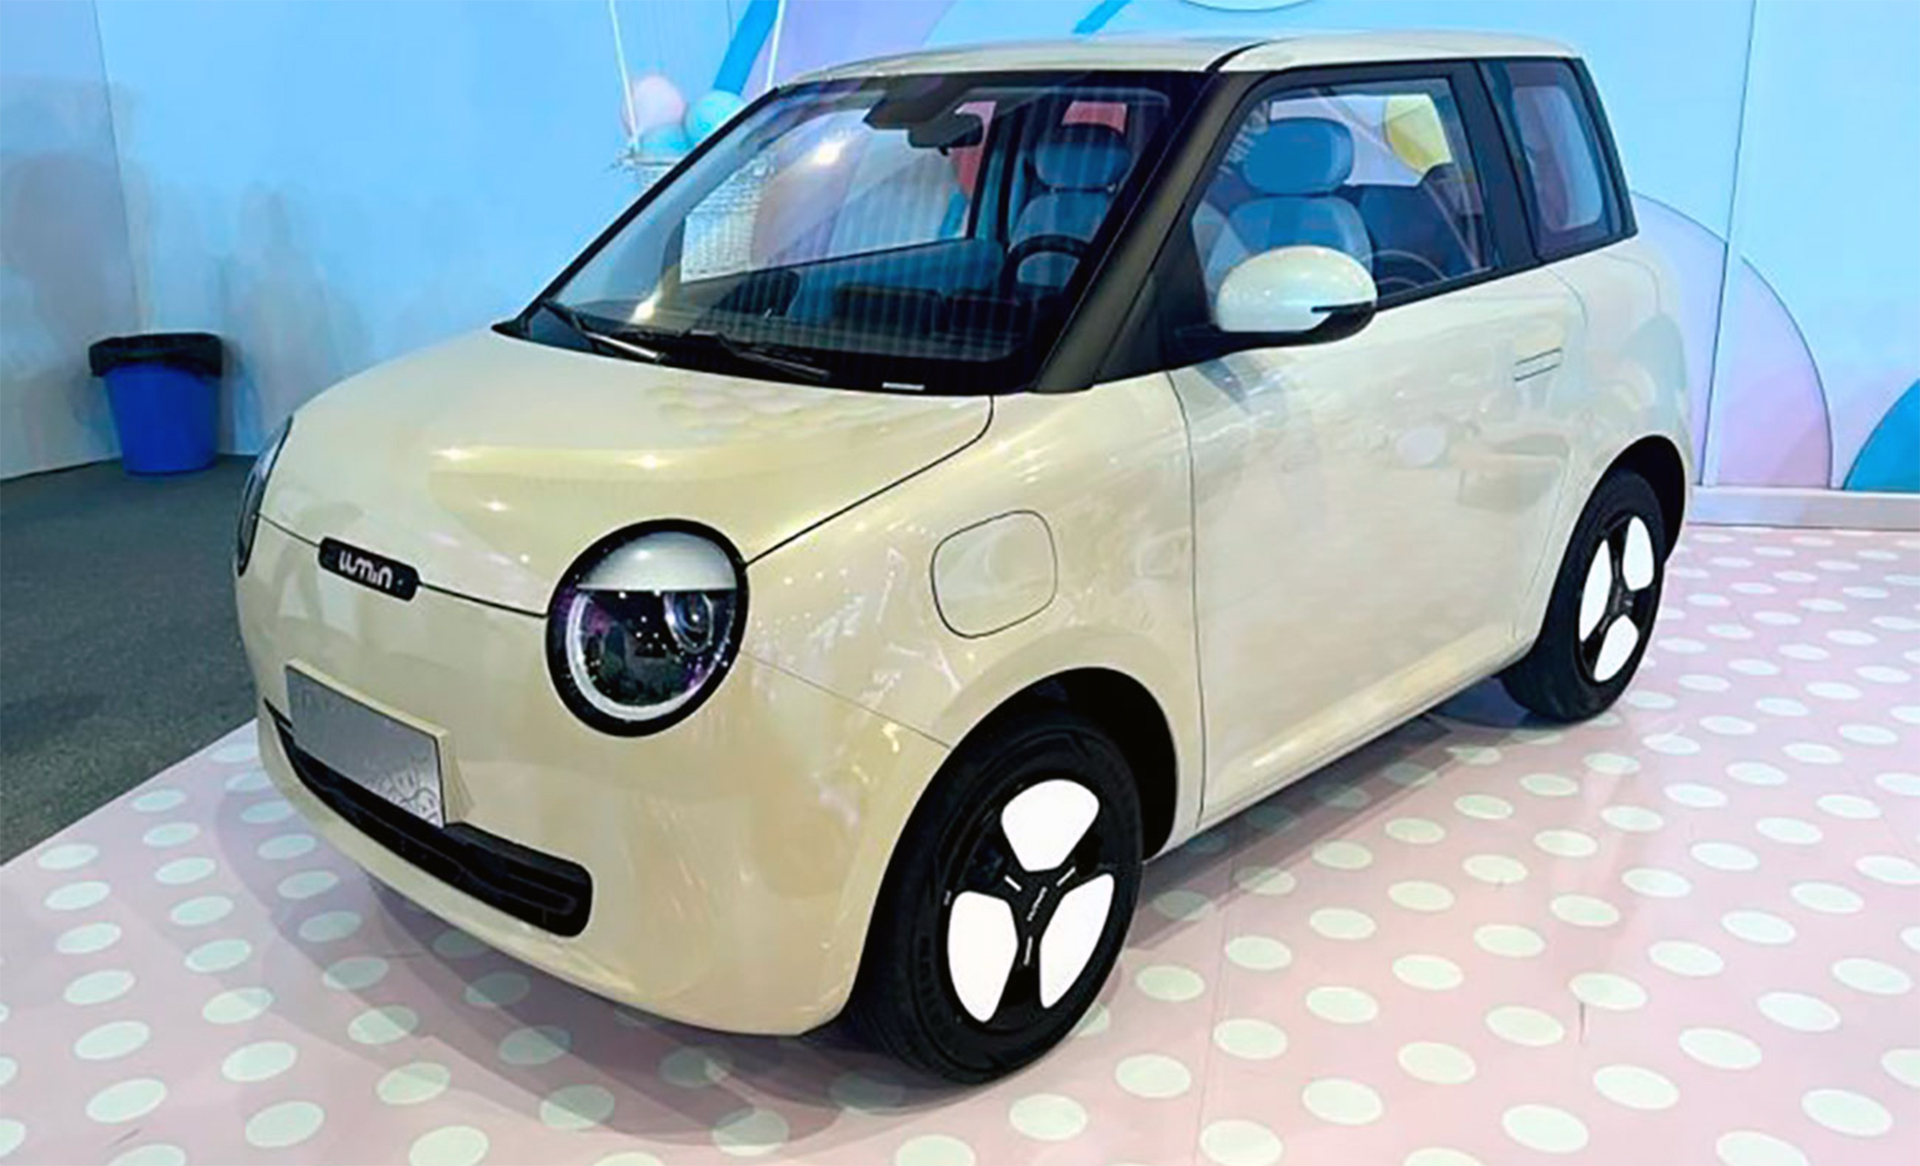 Si bien no se ha comuniado el precio del Changan Lumin Corn, el objetivo es entrar en competencia con el Wuling MINI EV, el auto eléctrico más barato del mundo que se vende solo en China